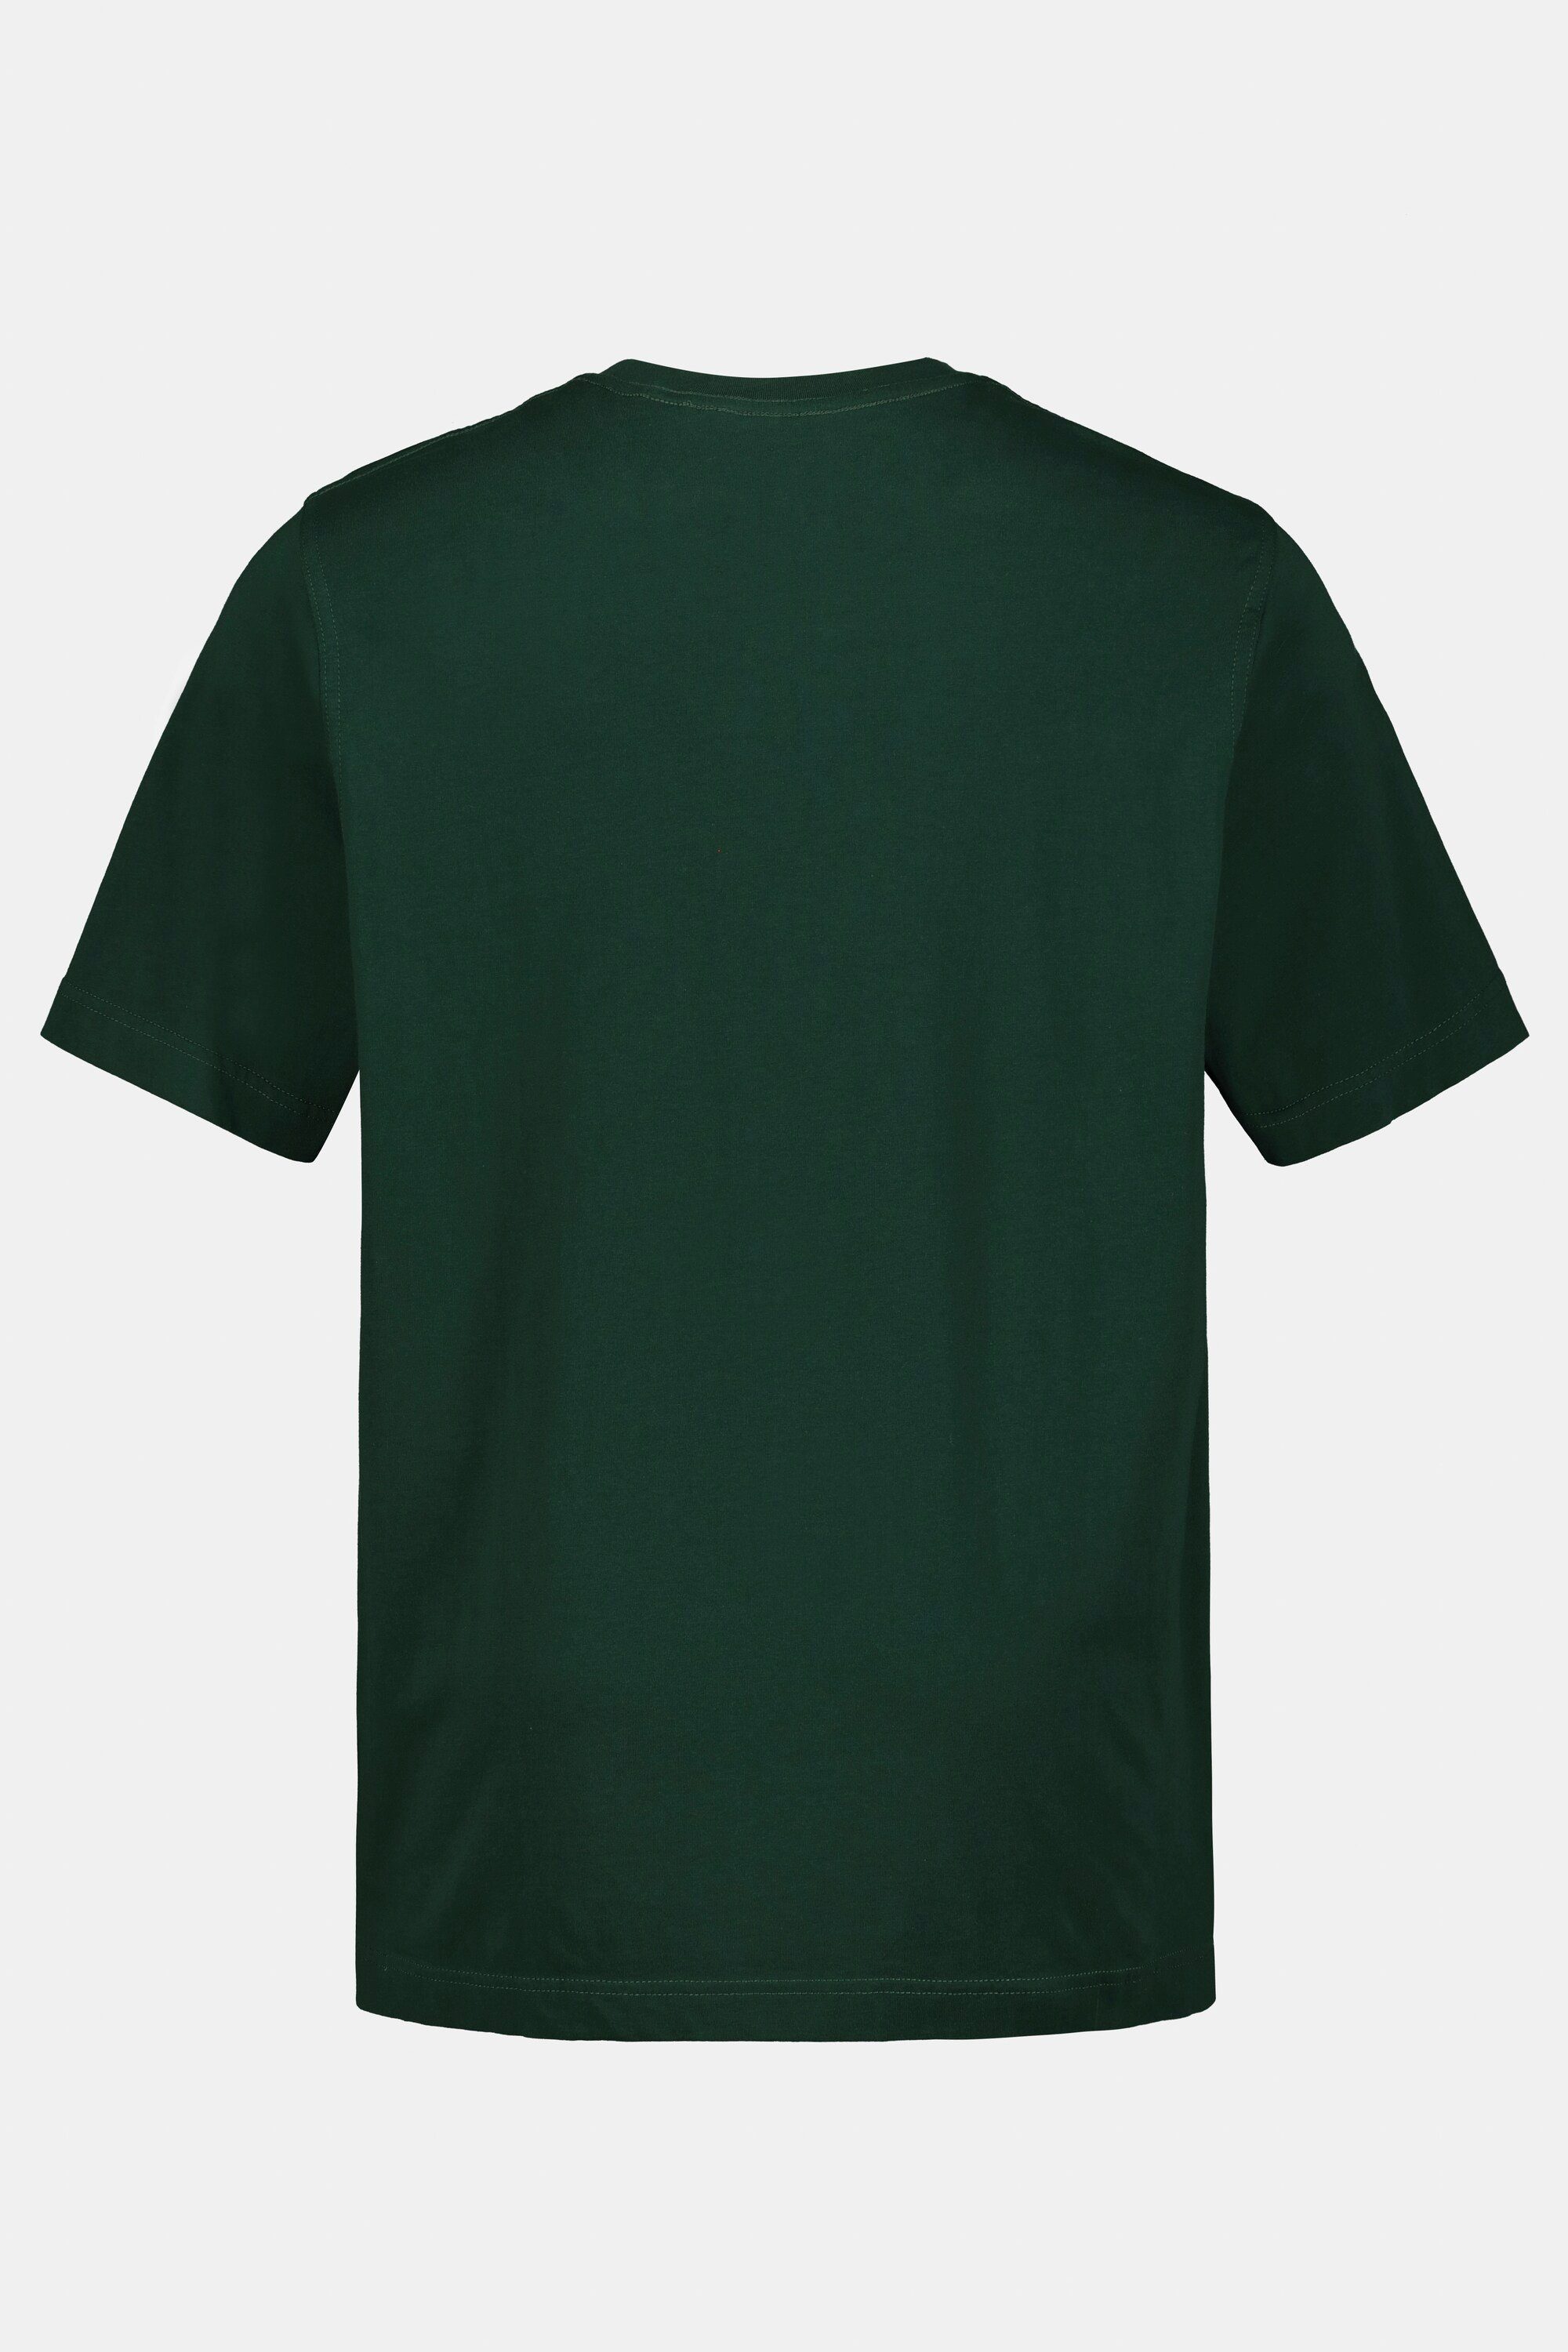 T-Shirt dunkelgrün Rundhals JP1880 8XL T-Shirt gekämmte Basic bis Baumwolle